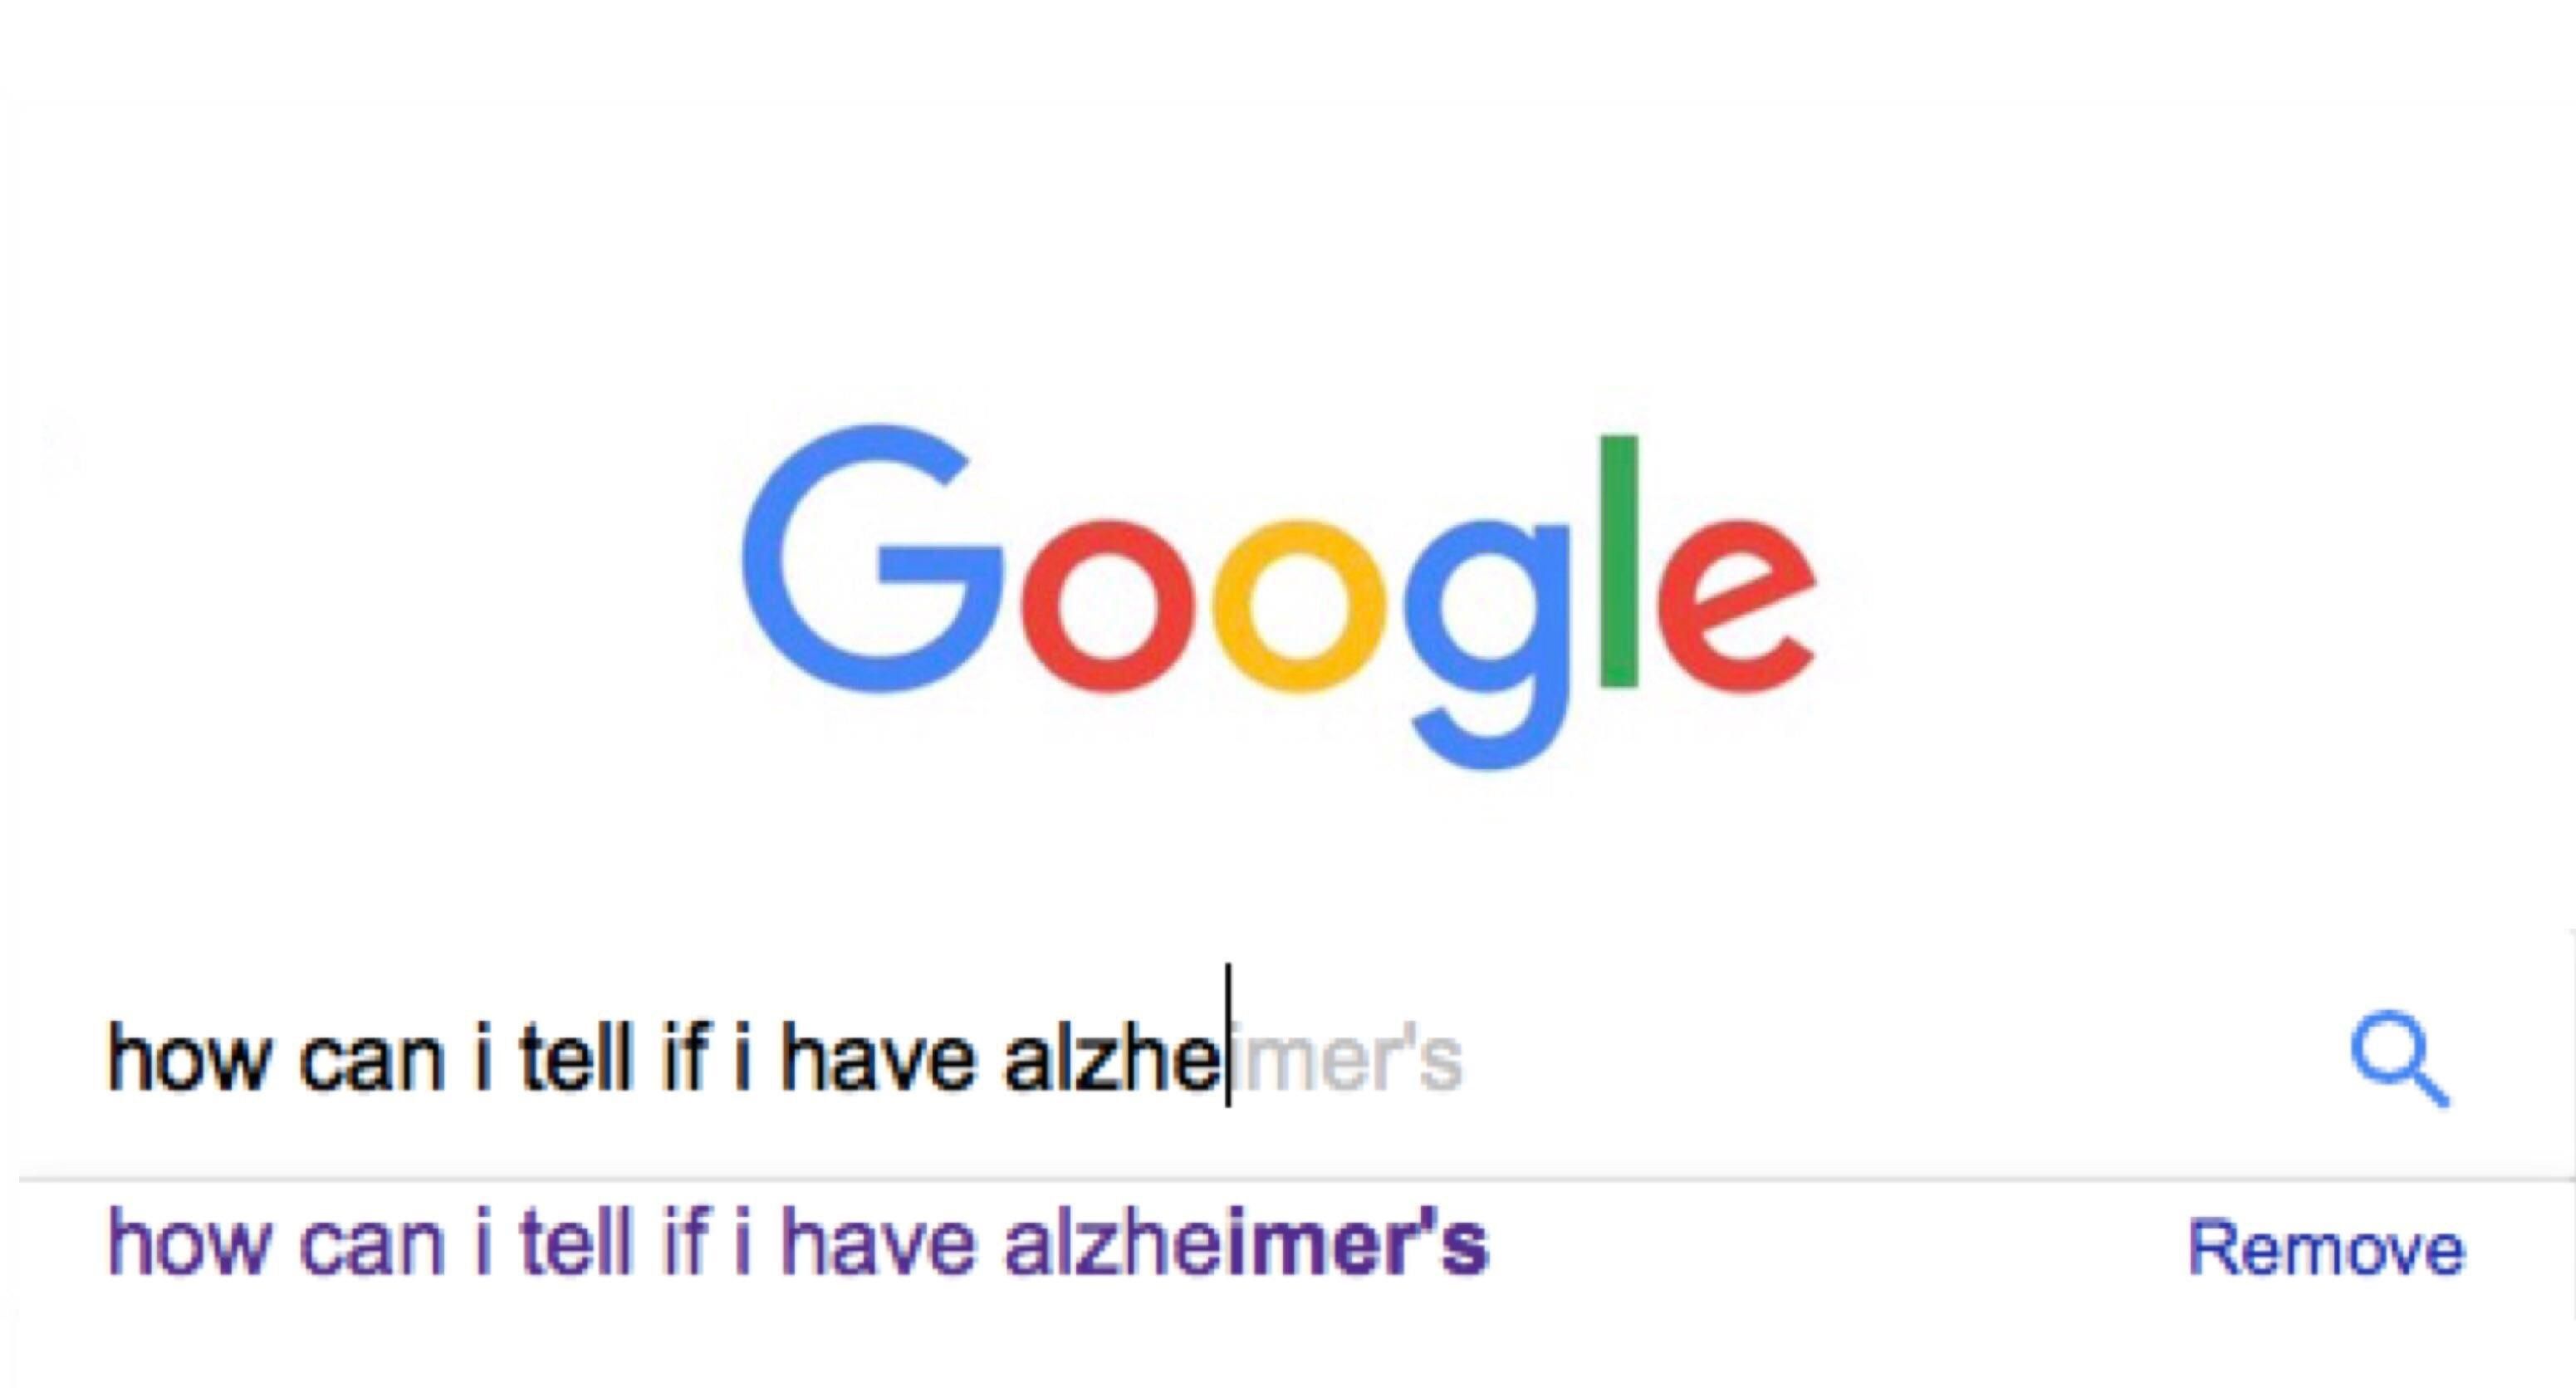 Do I have Alzheimer's?